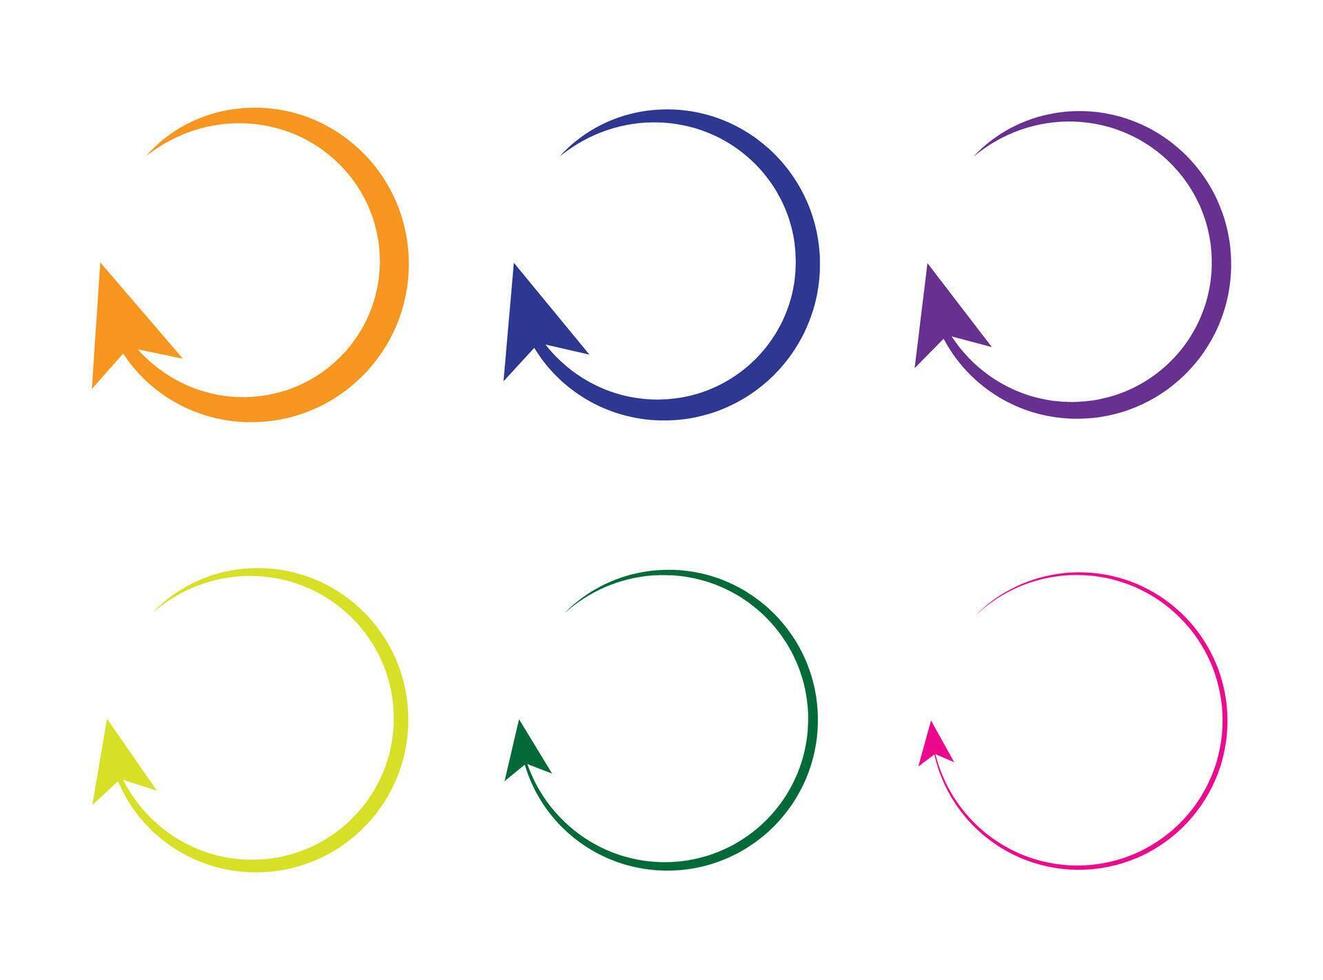 Refresh icon or symbol, restart icon circle arrow symbolizes vector. vector